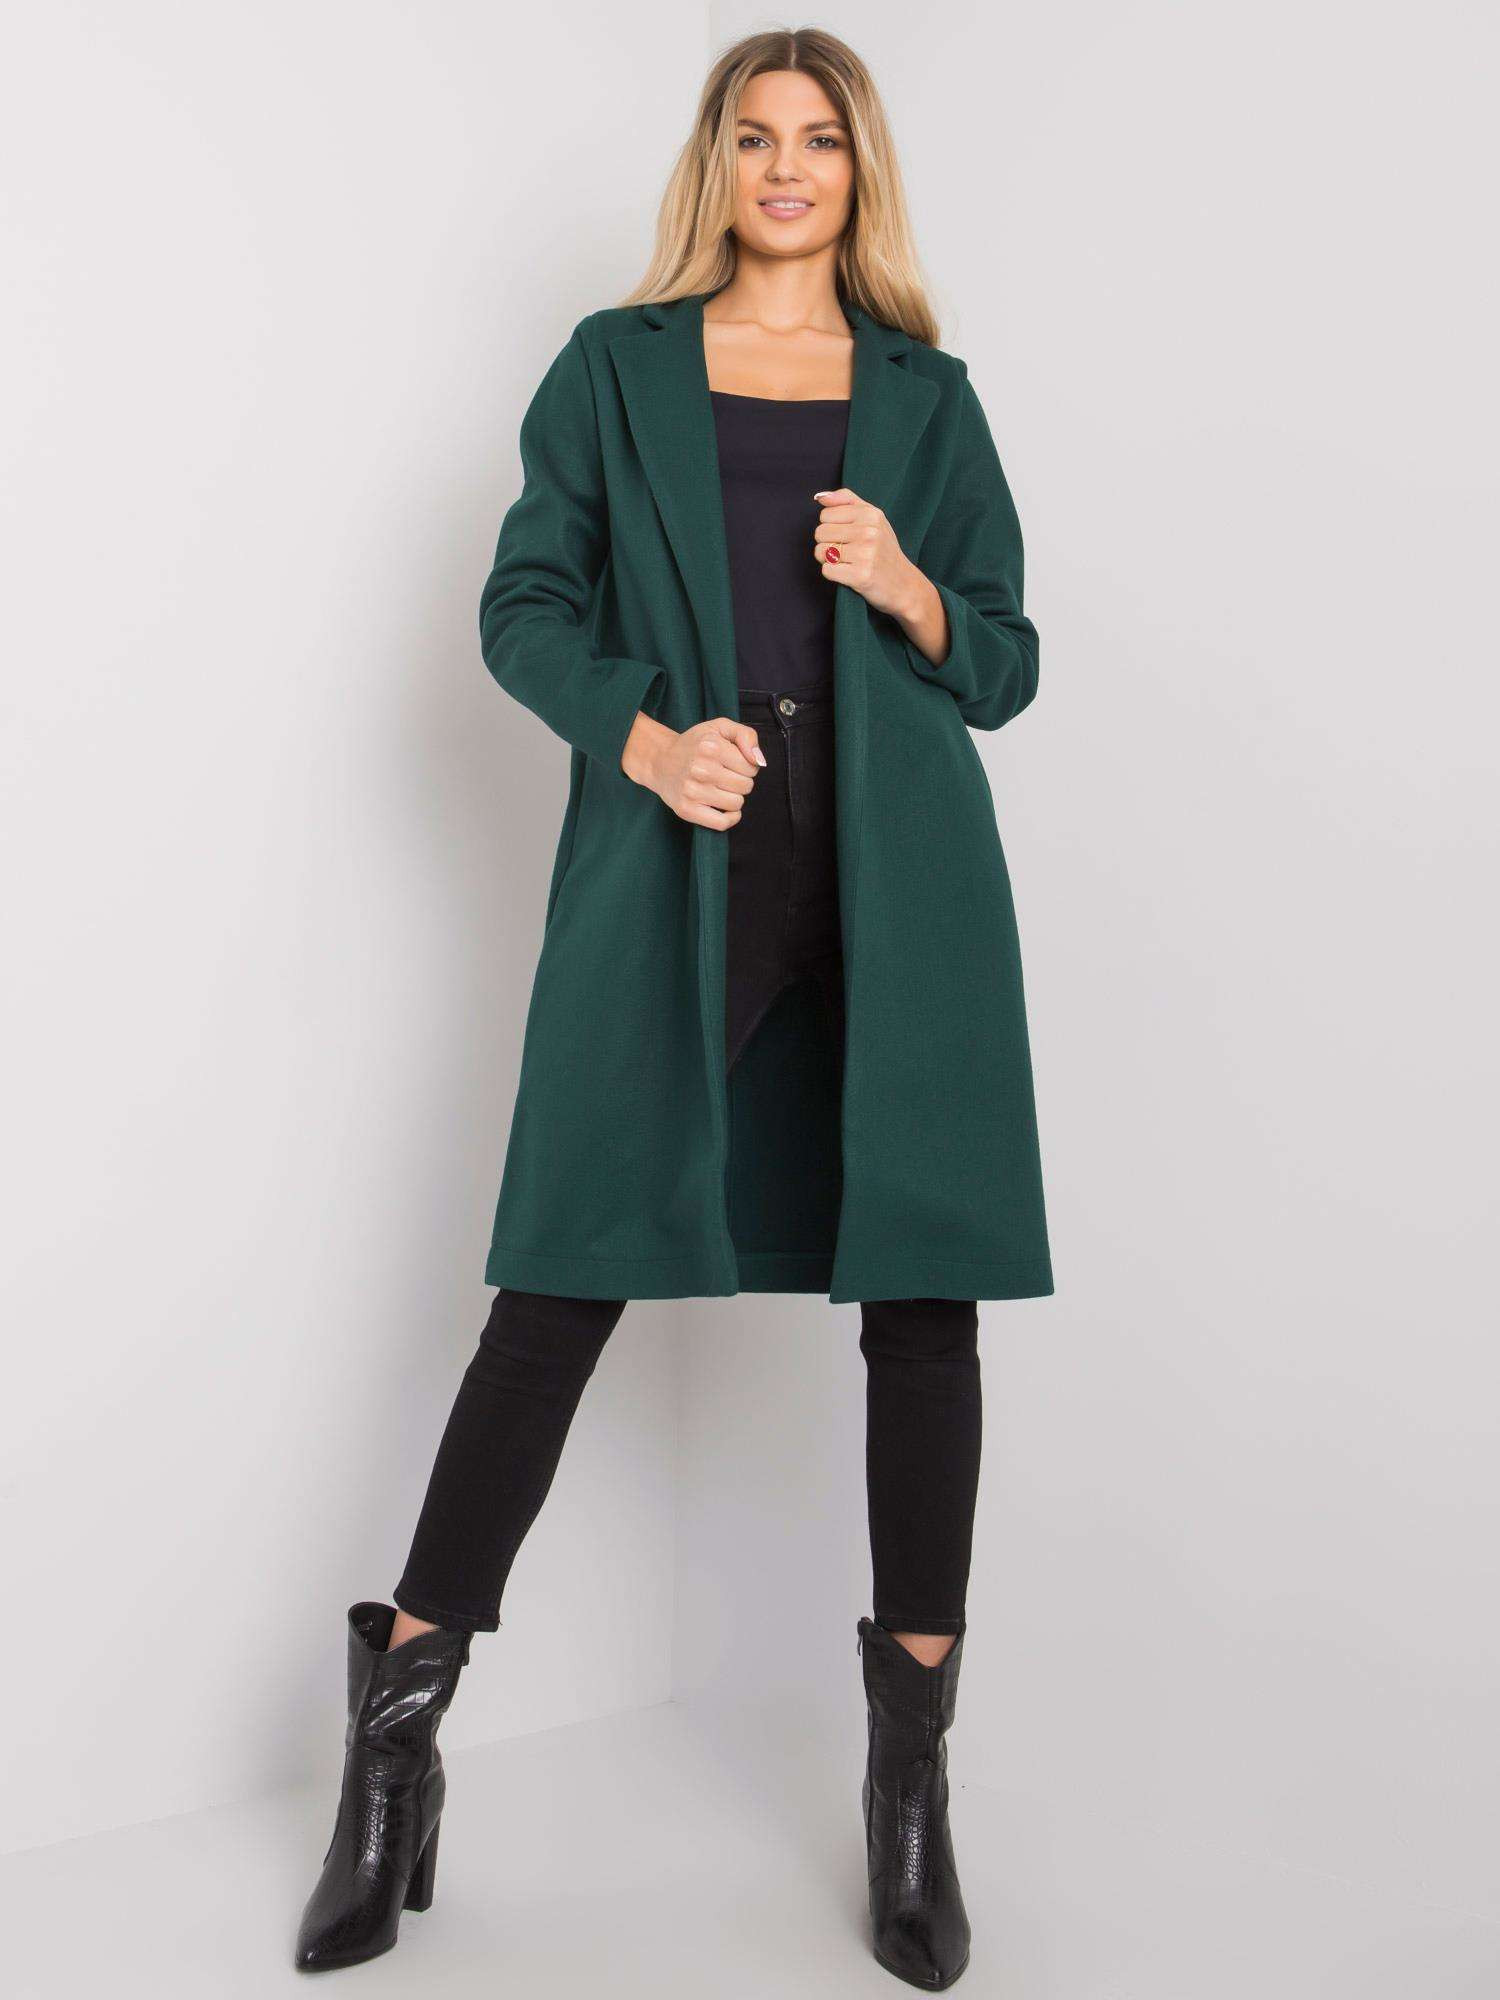 Dámský kabát CHA PL model 15795899 tmavě zelený S/M - FPrice